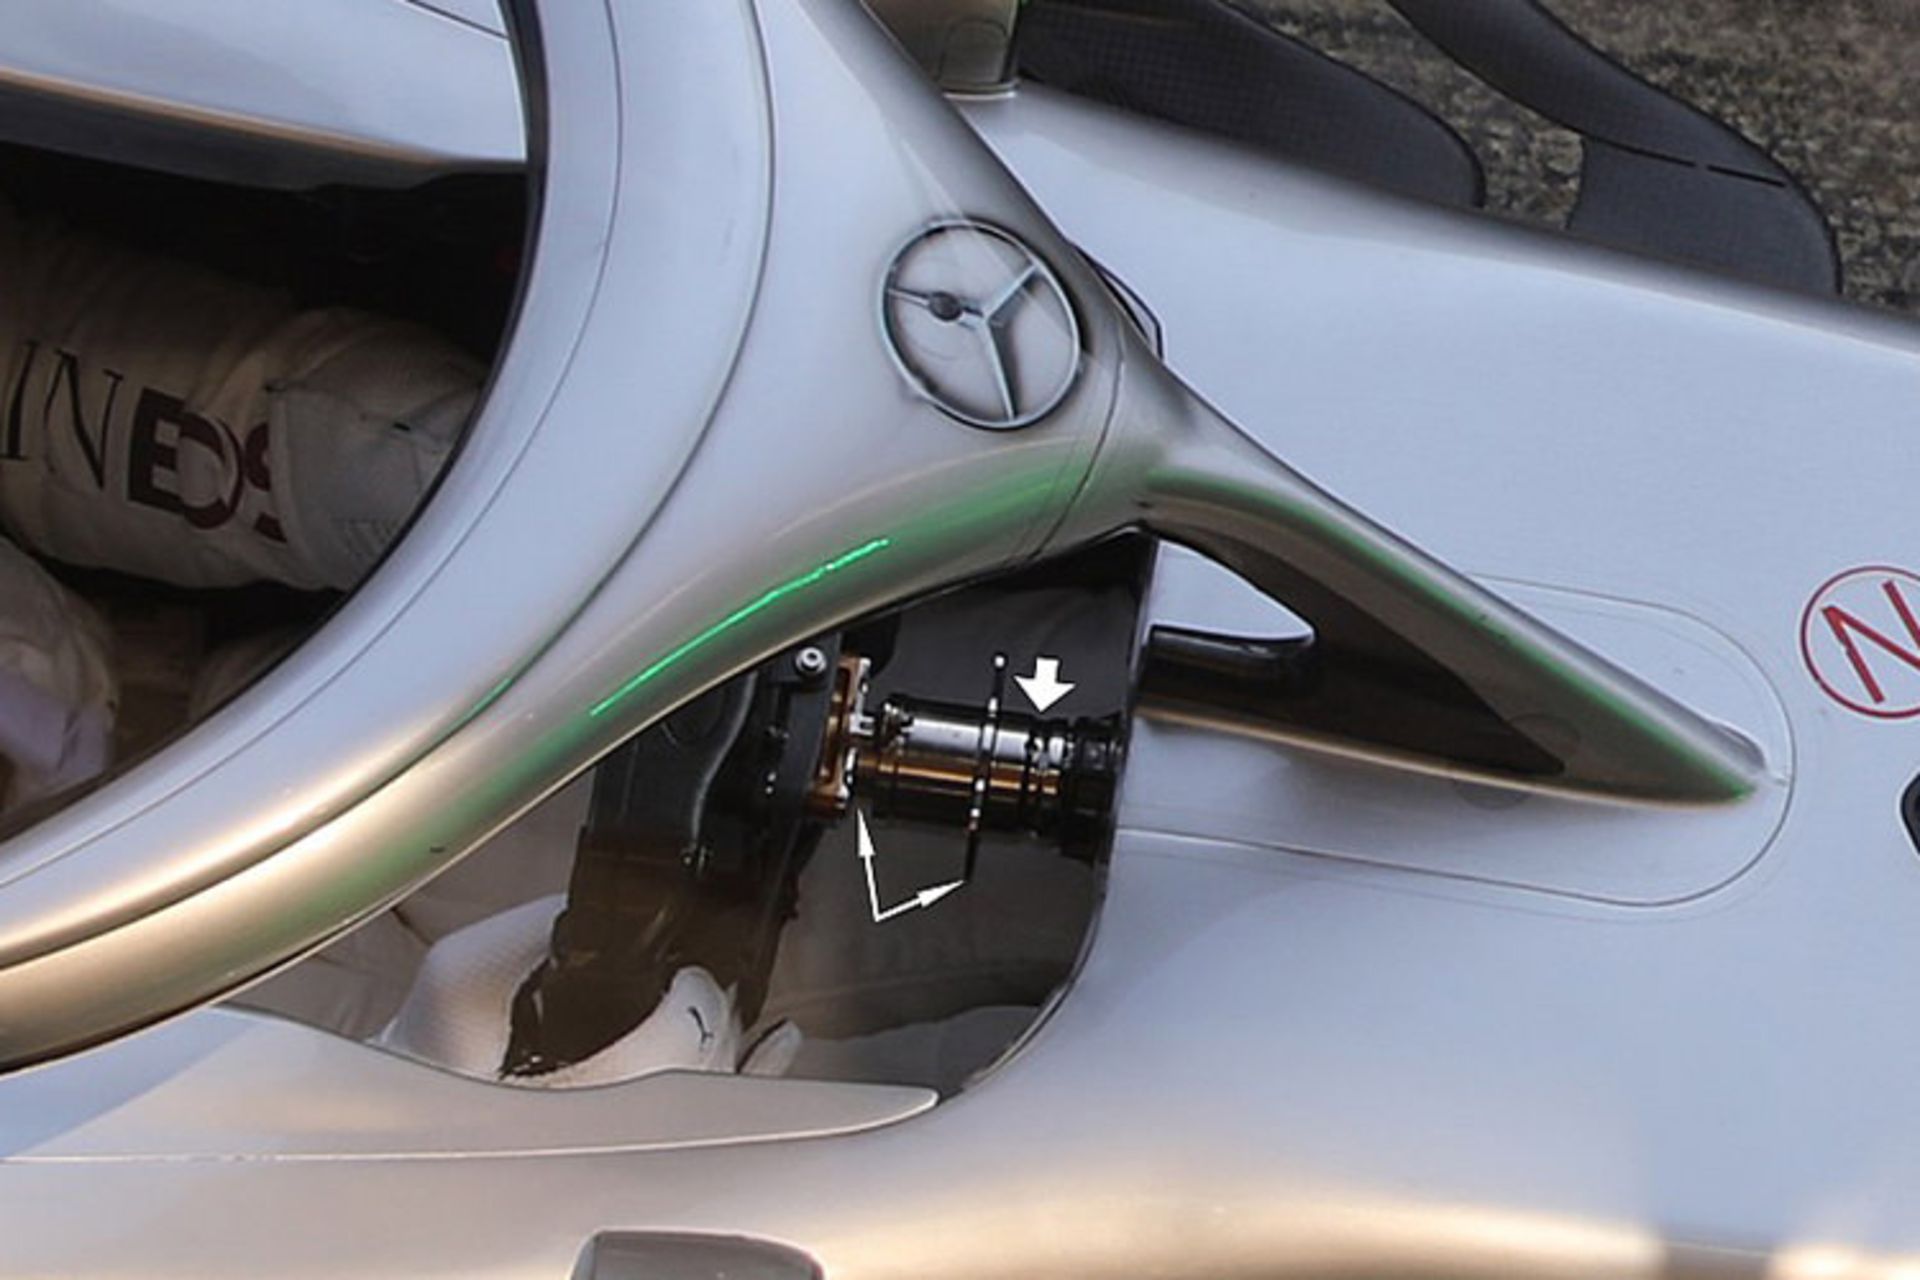 مرجع متخصصين ايران Mercedes-AMG W11 DAS system